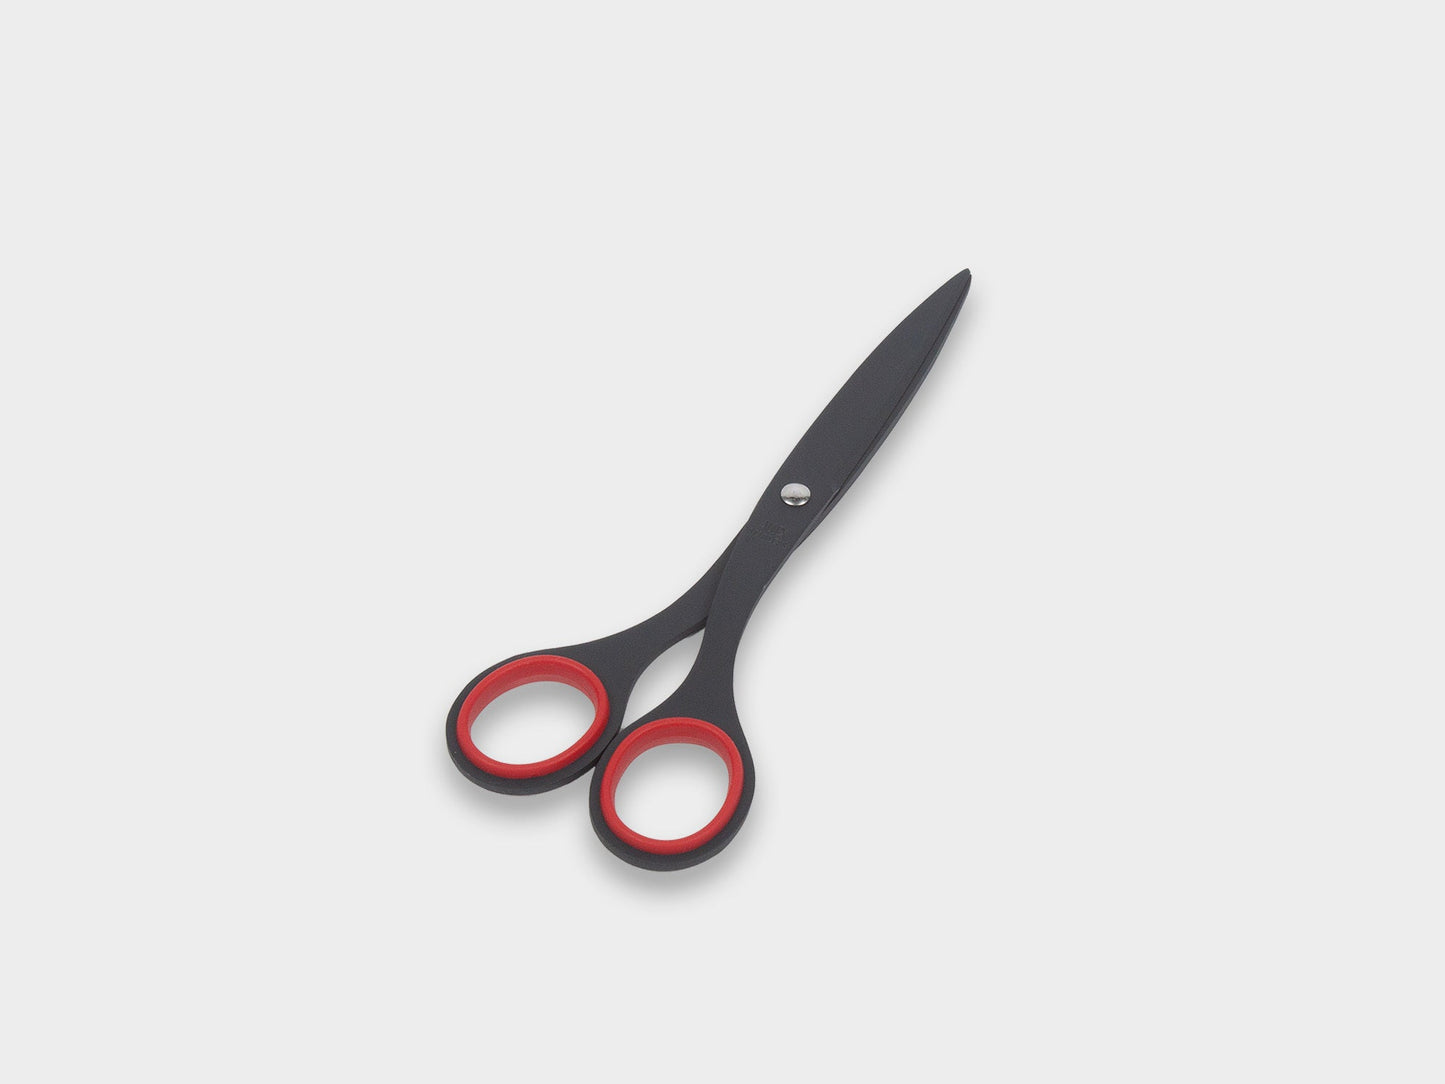 Allex Paper Scissors